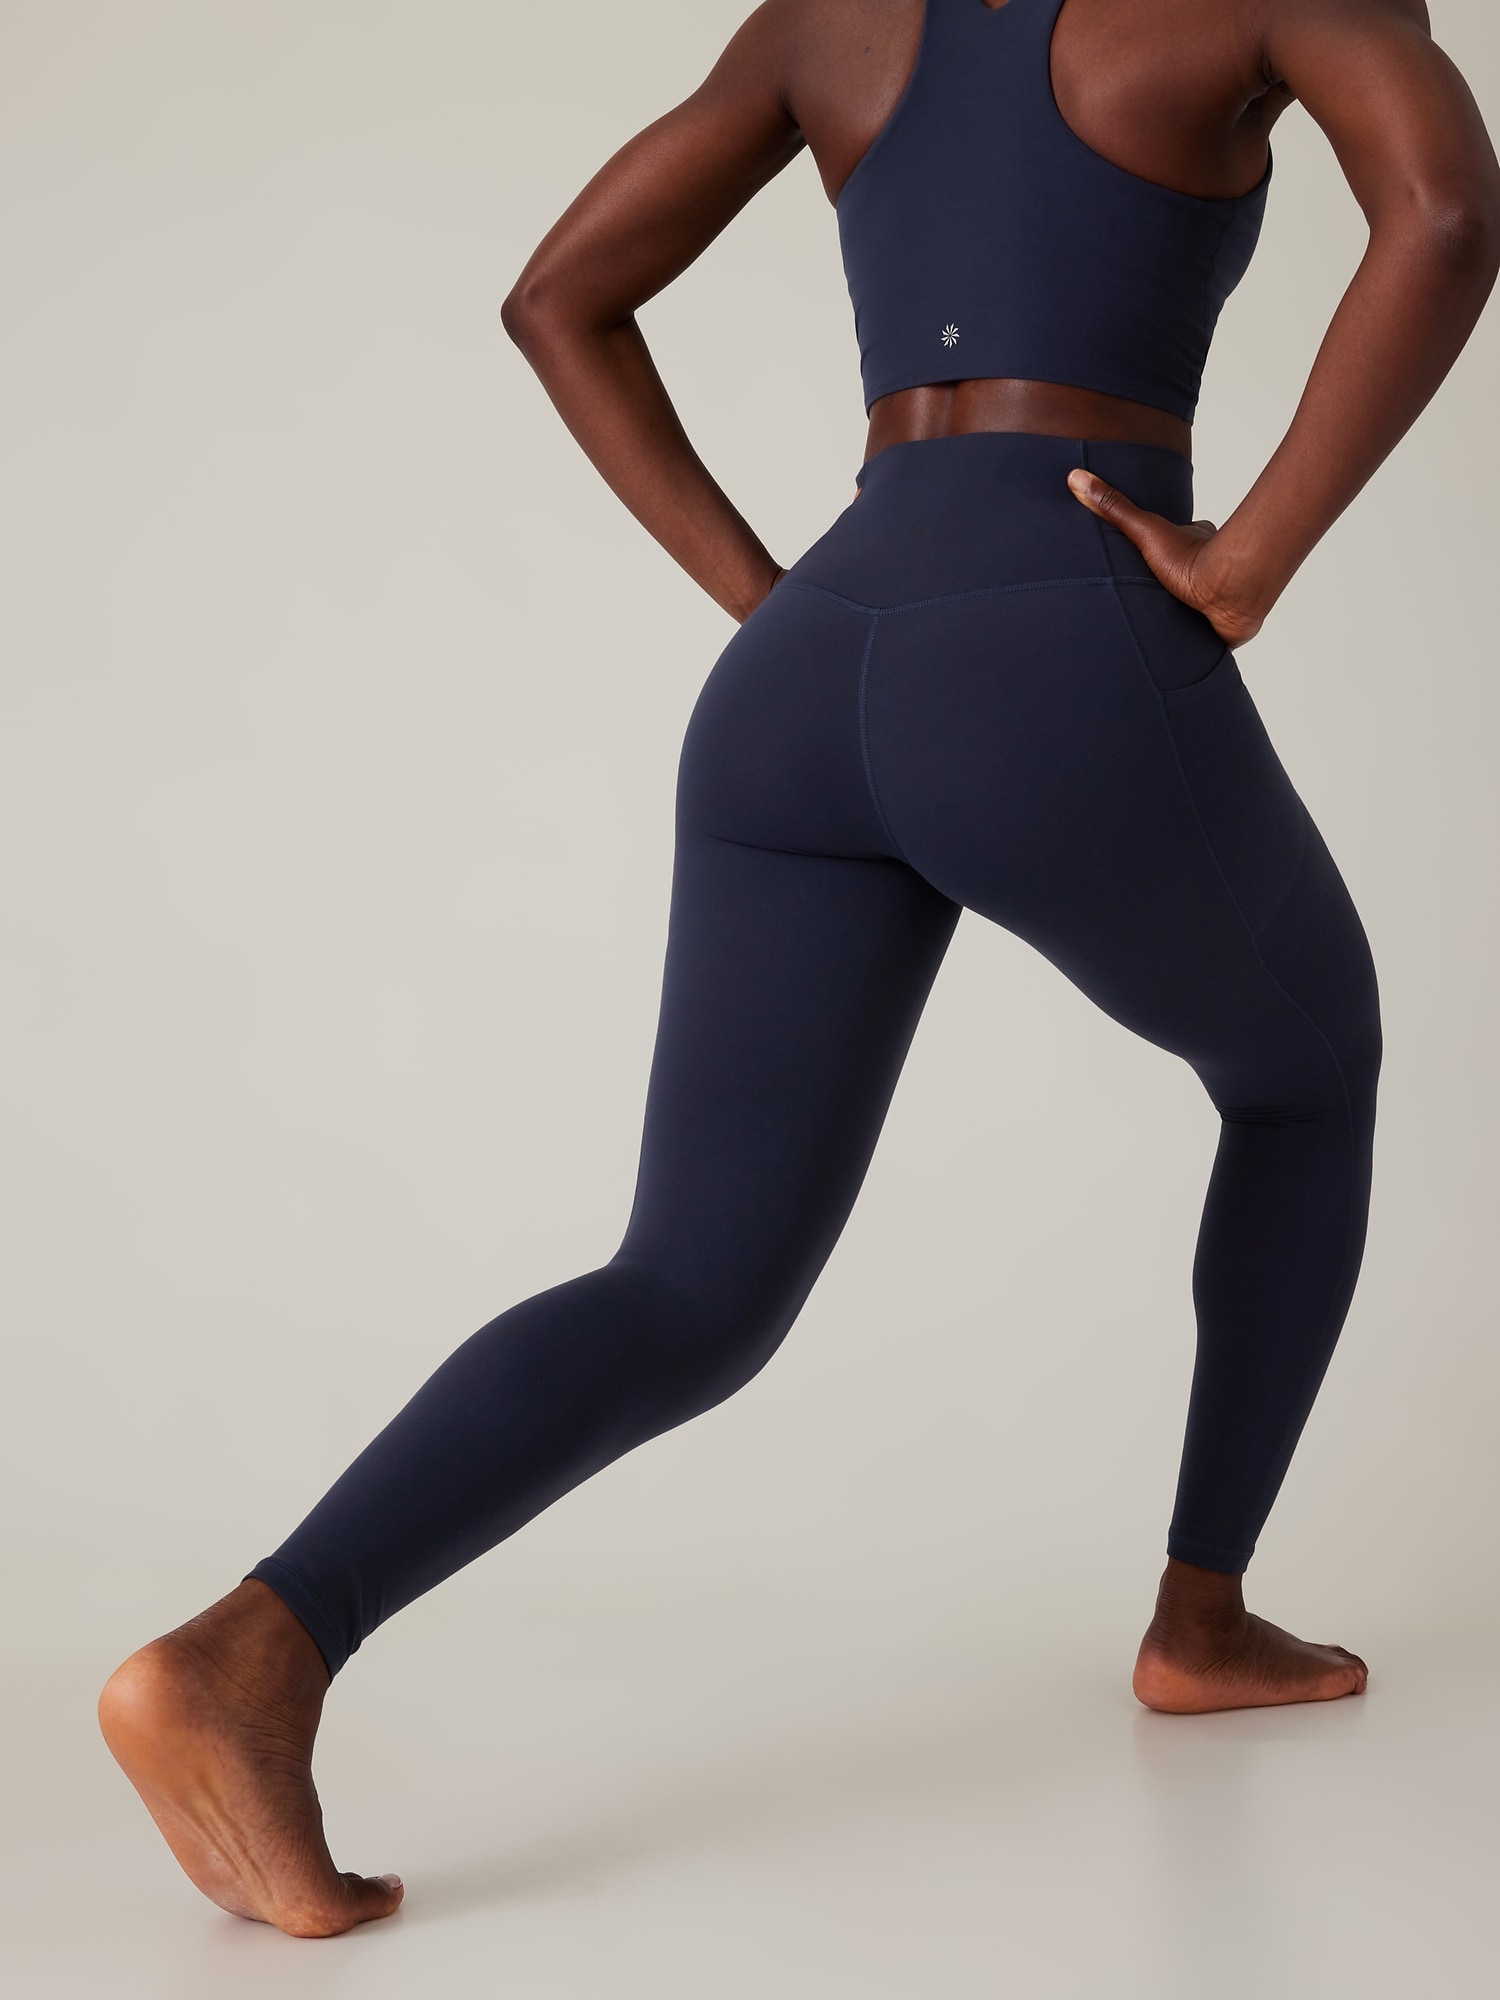 Athleta Womens Skirted Leggings Size Small Black Zip Back Pockets